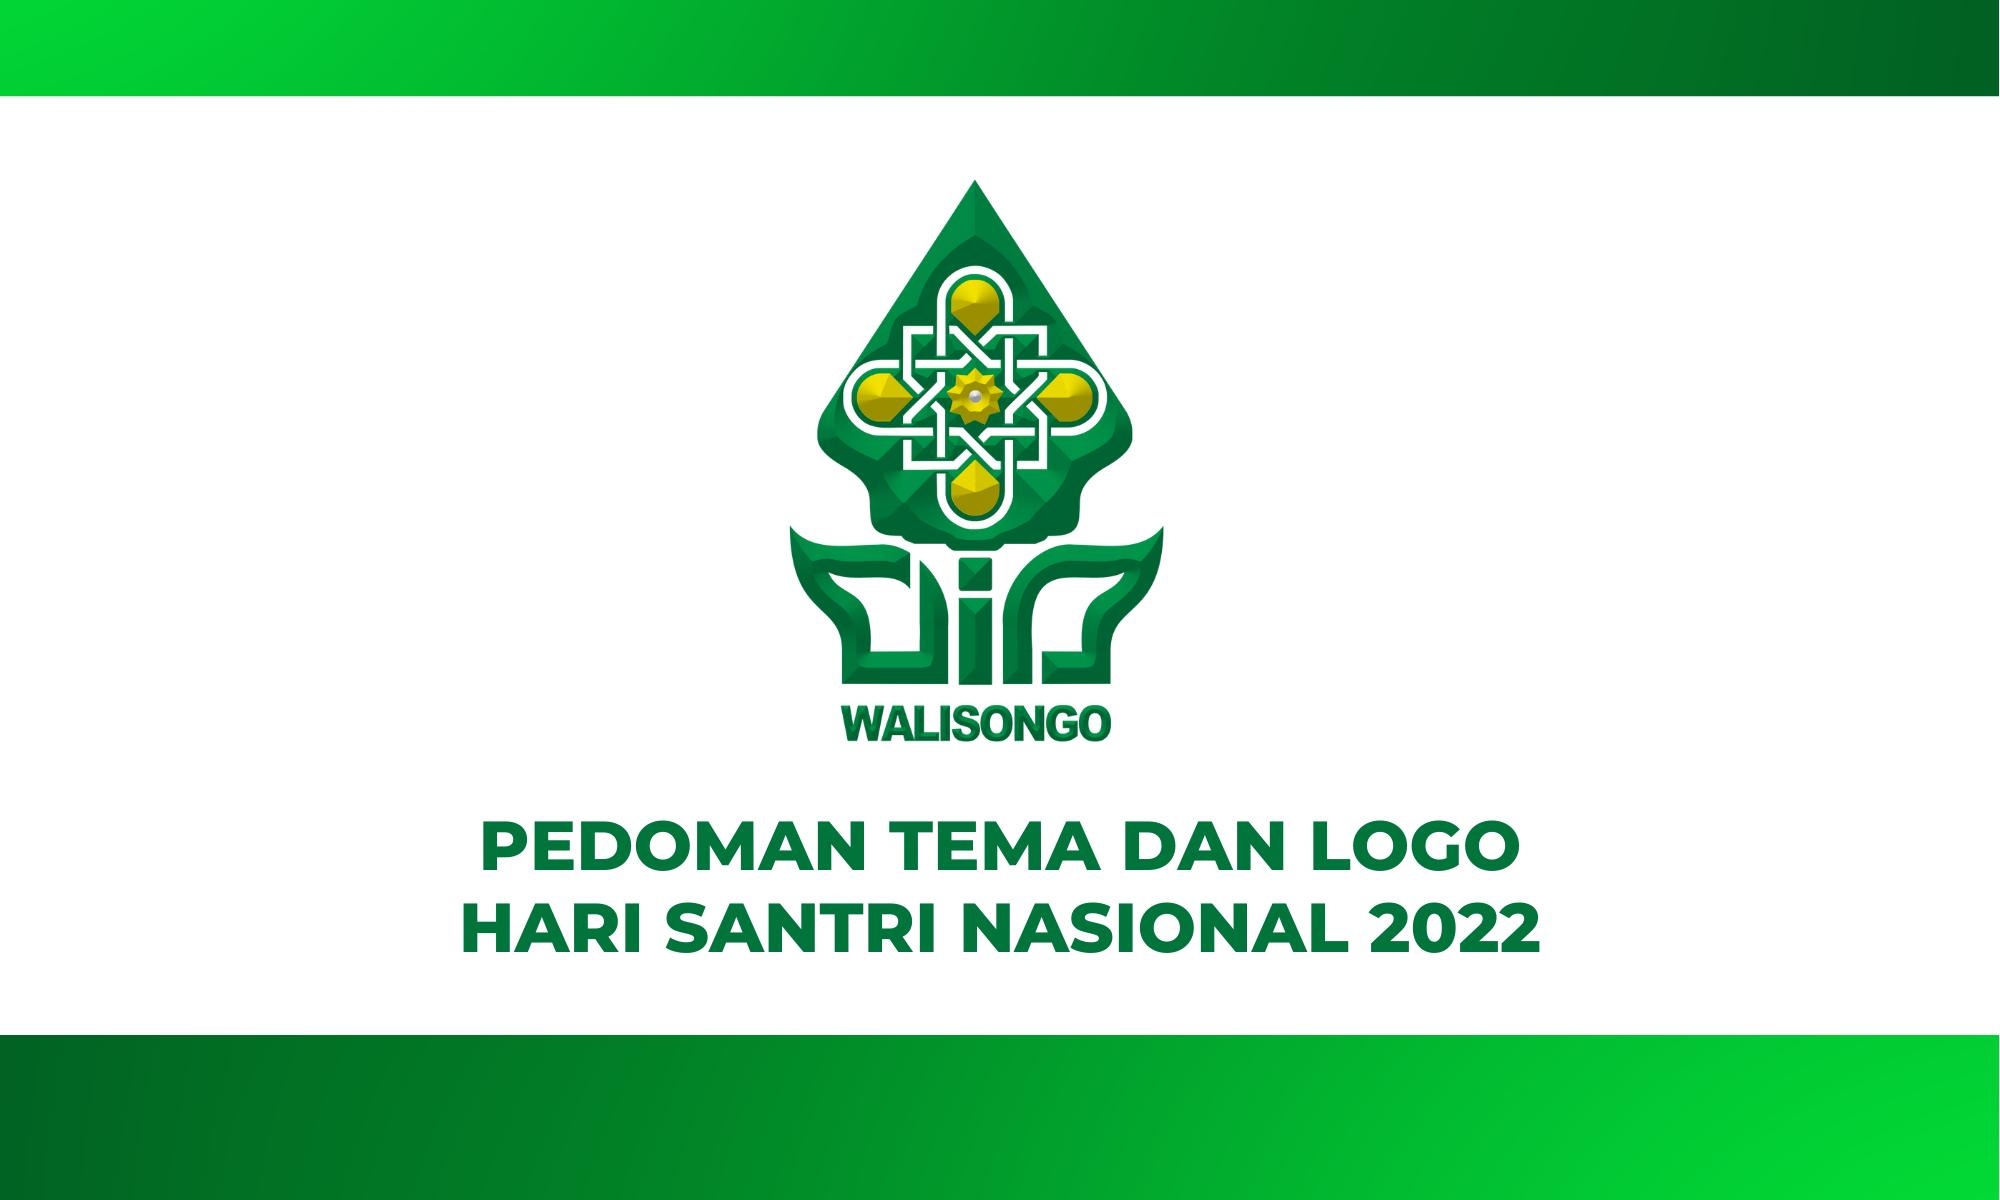 Pedoman Tema dan Logo Hari Santri Nasional 2022